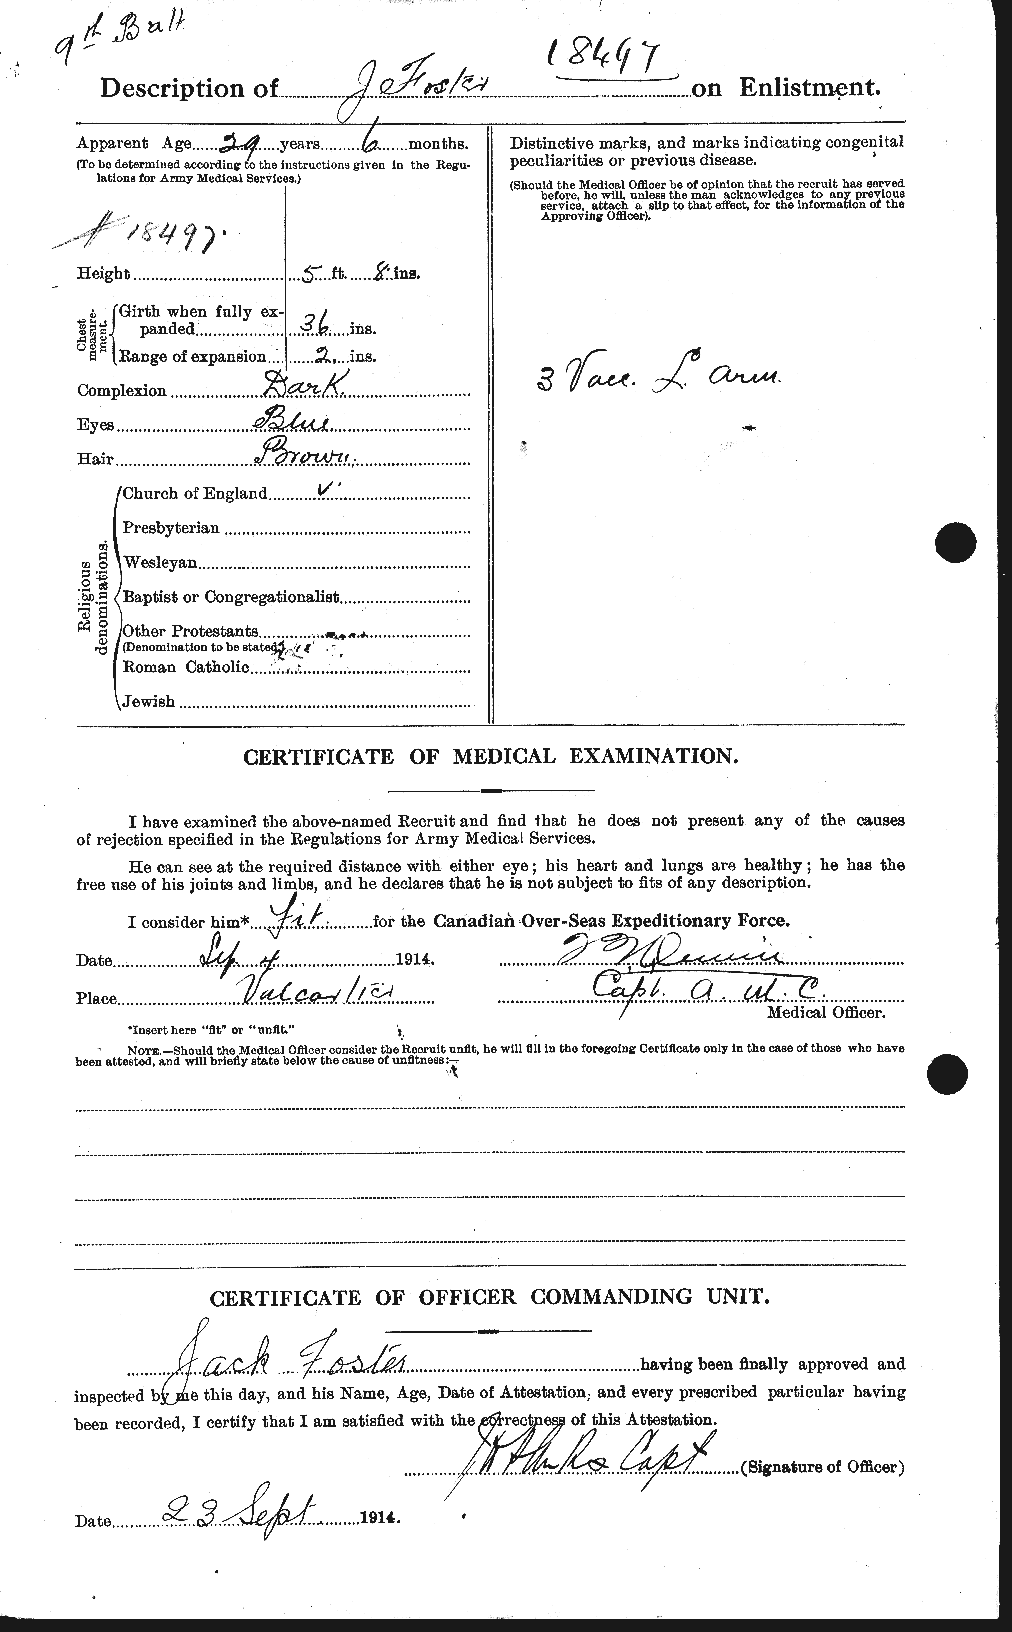 Dossiers du Personnel de la Première Guerre mondiale - CEC 333273b